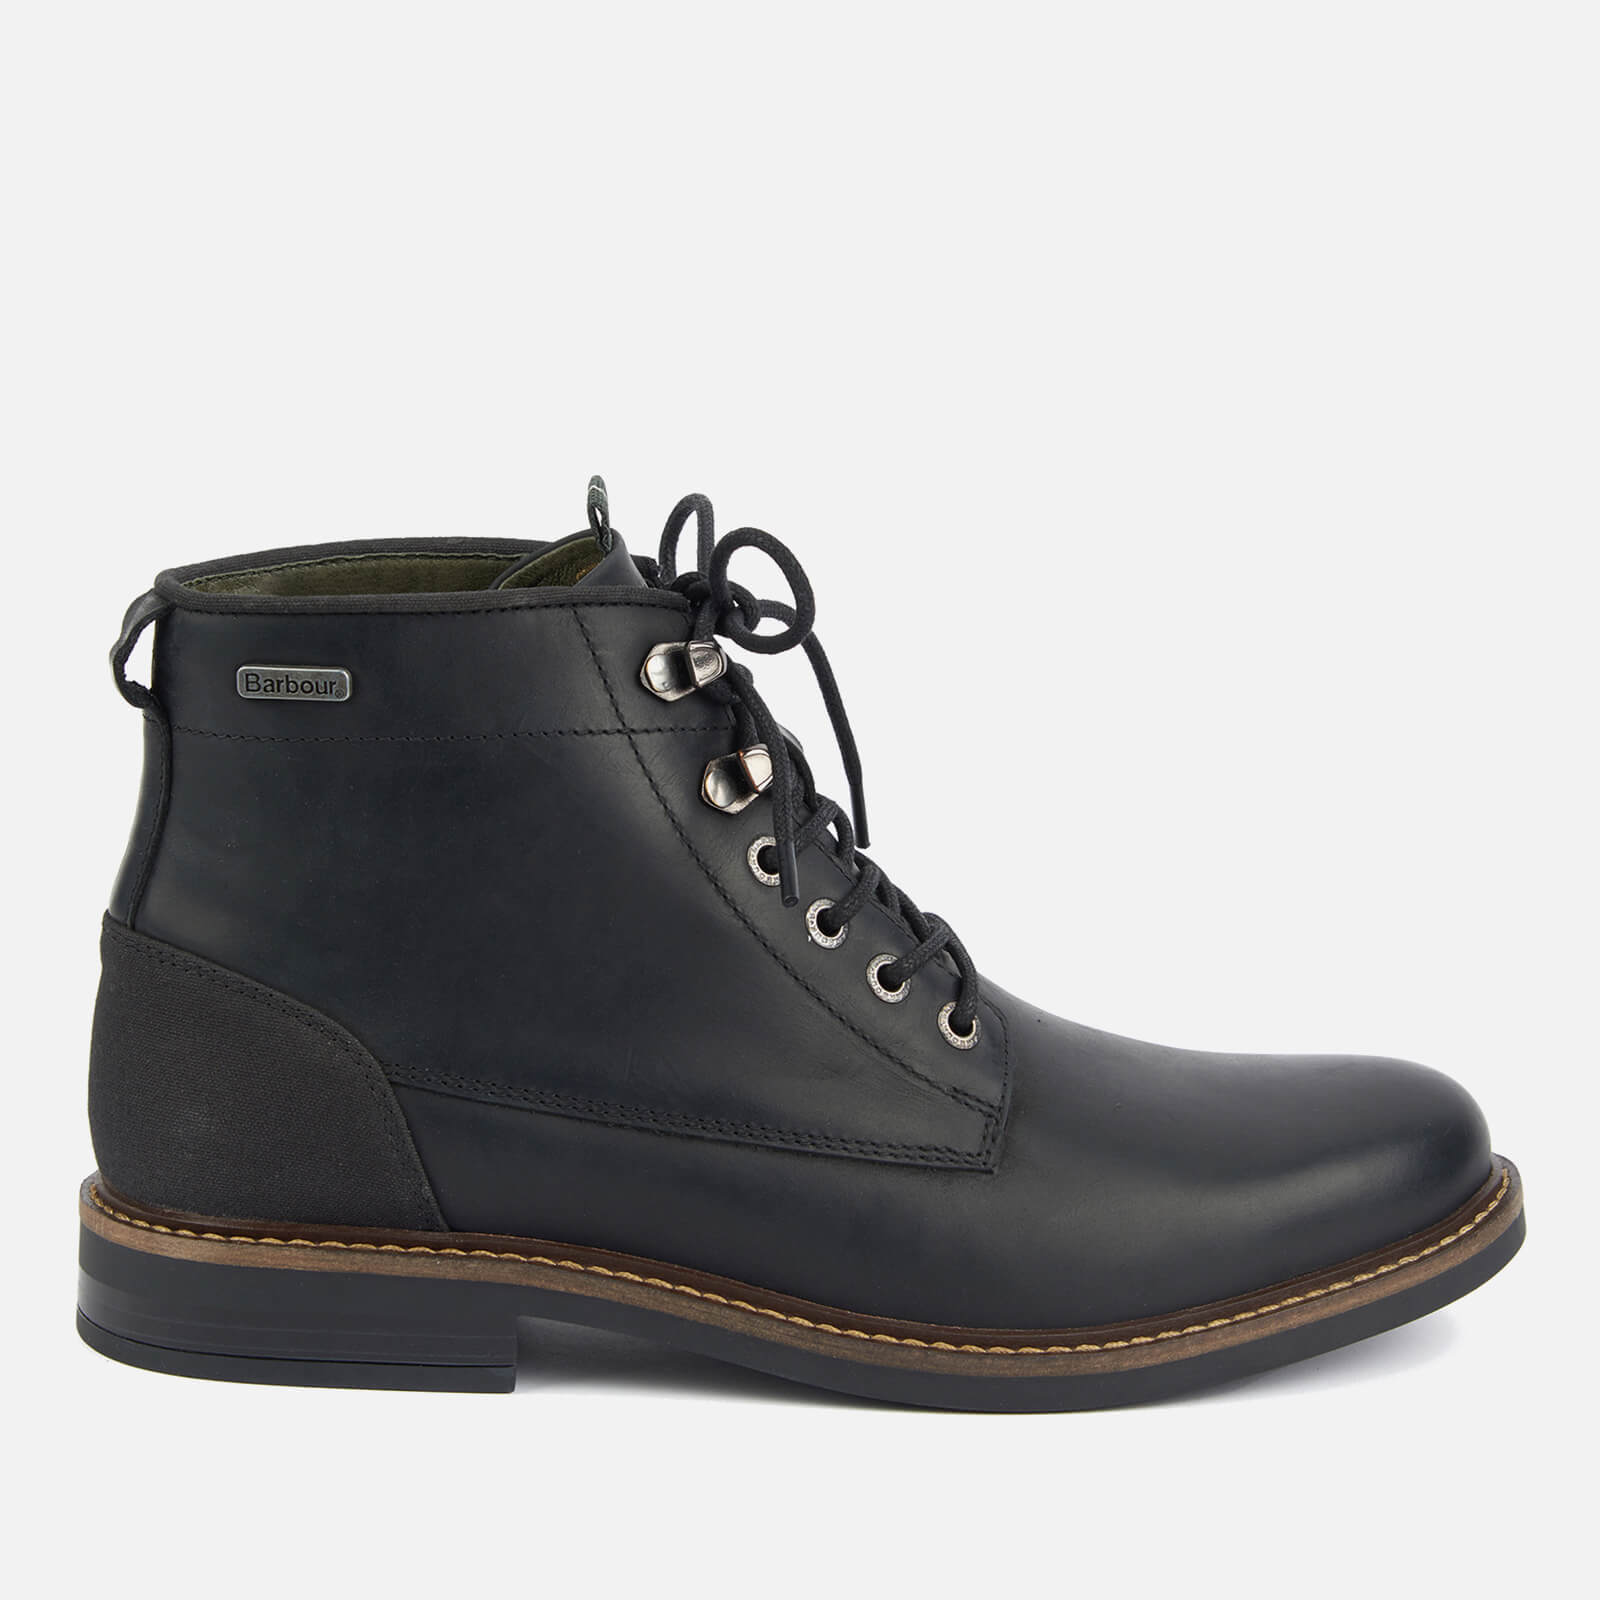 Barbour Men's Deckham Leather Boots - UK 8